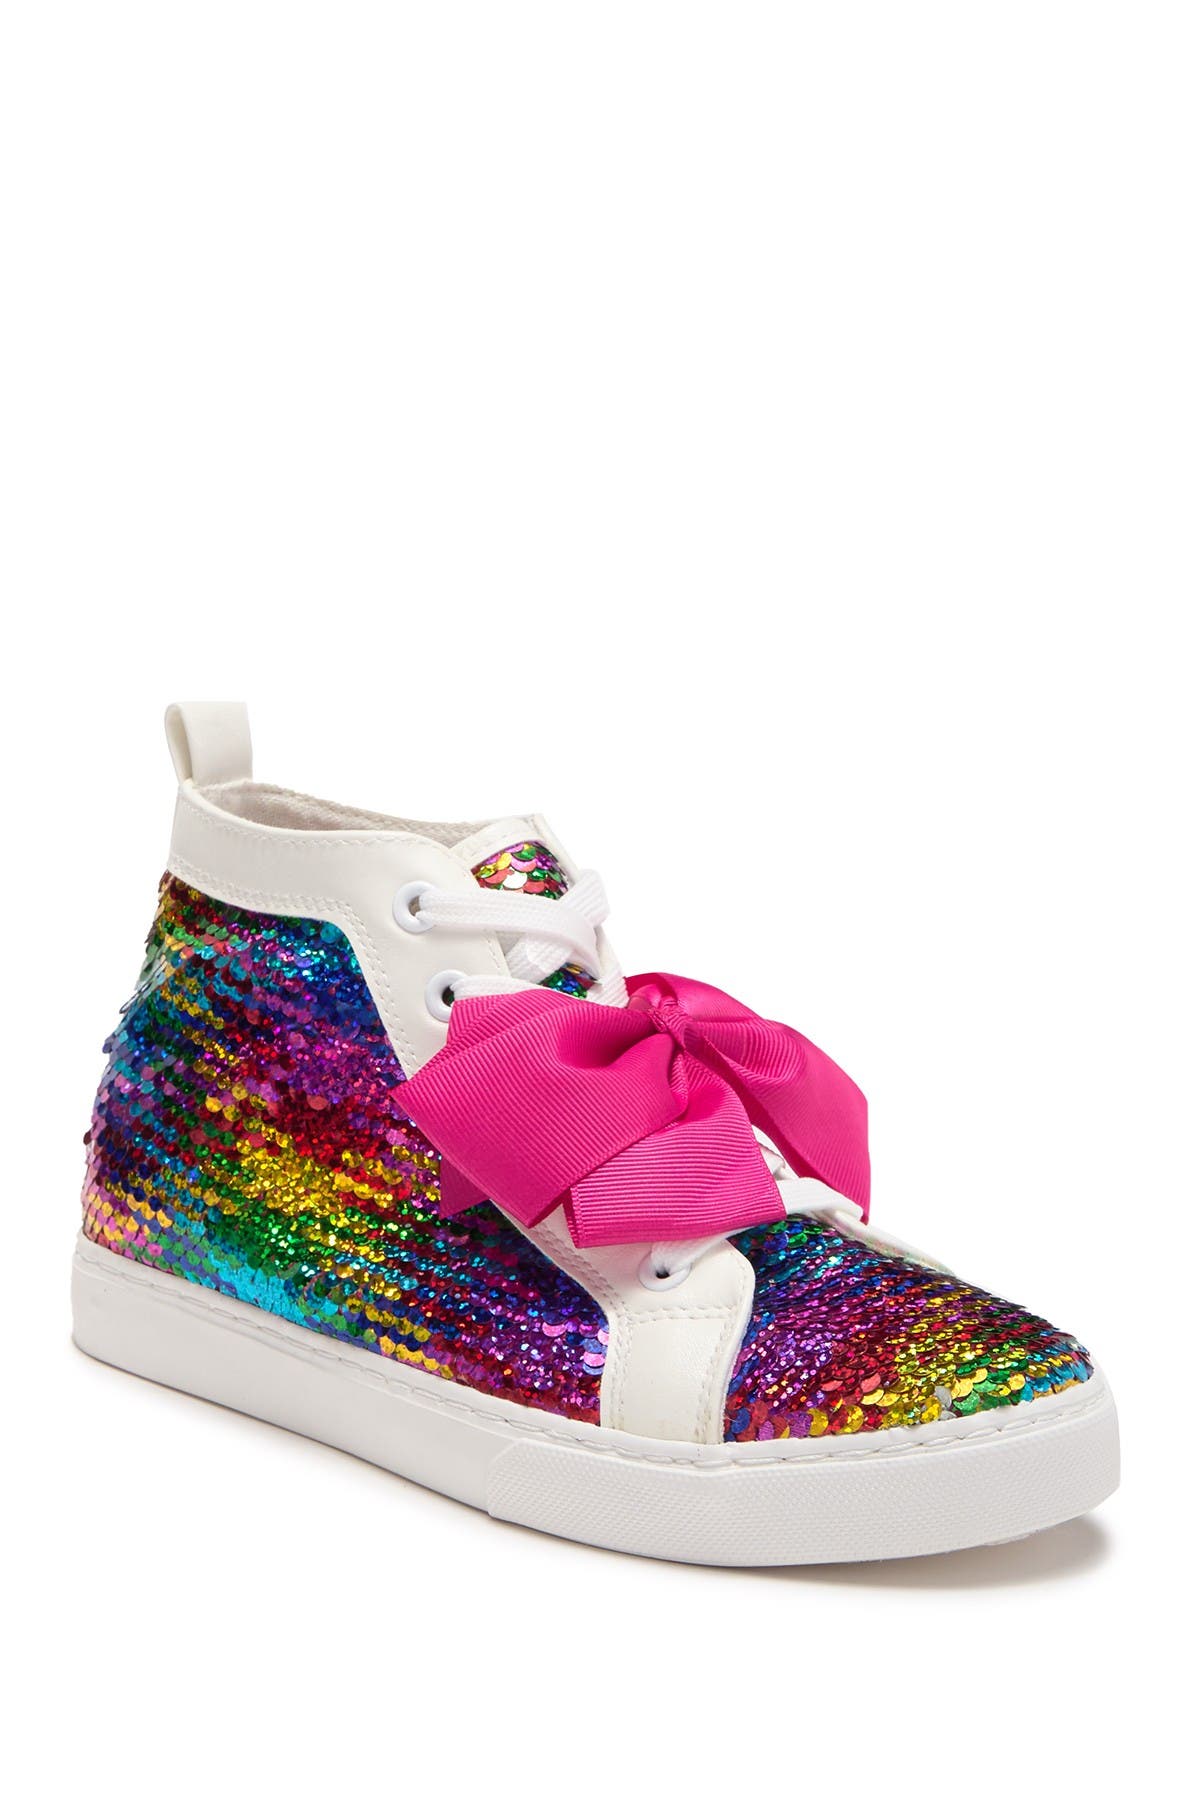 rainbow sequin sneakers